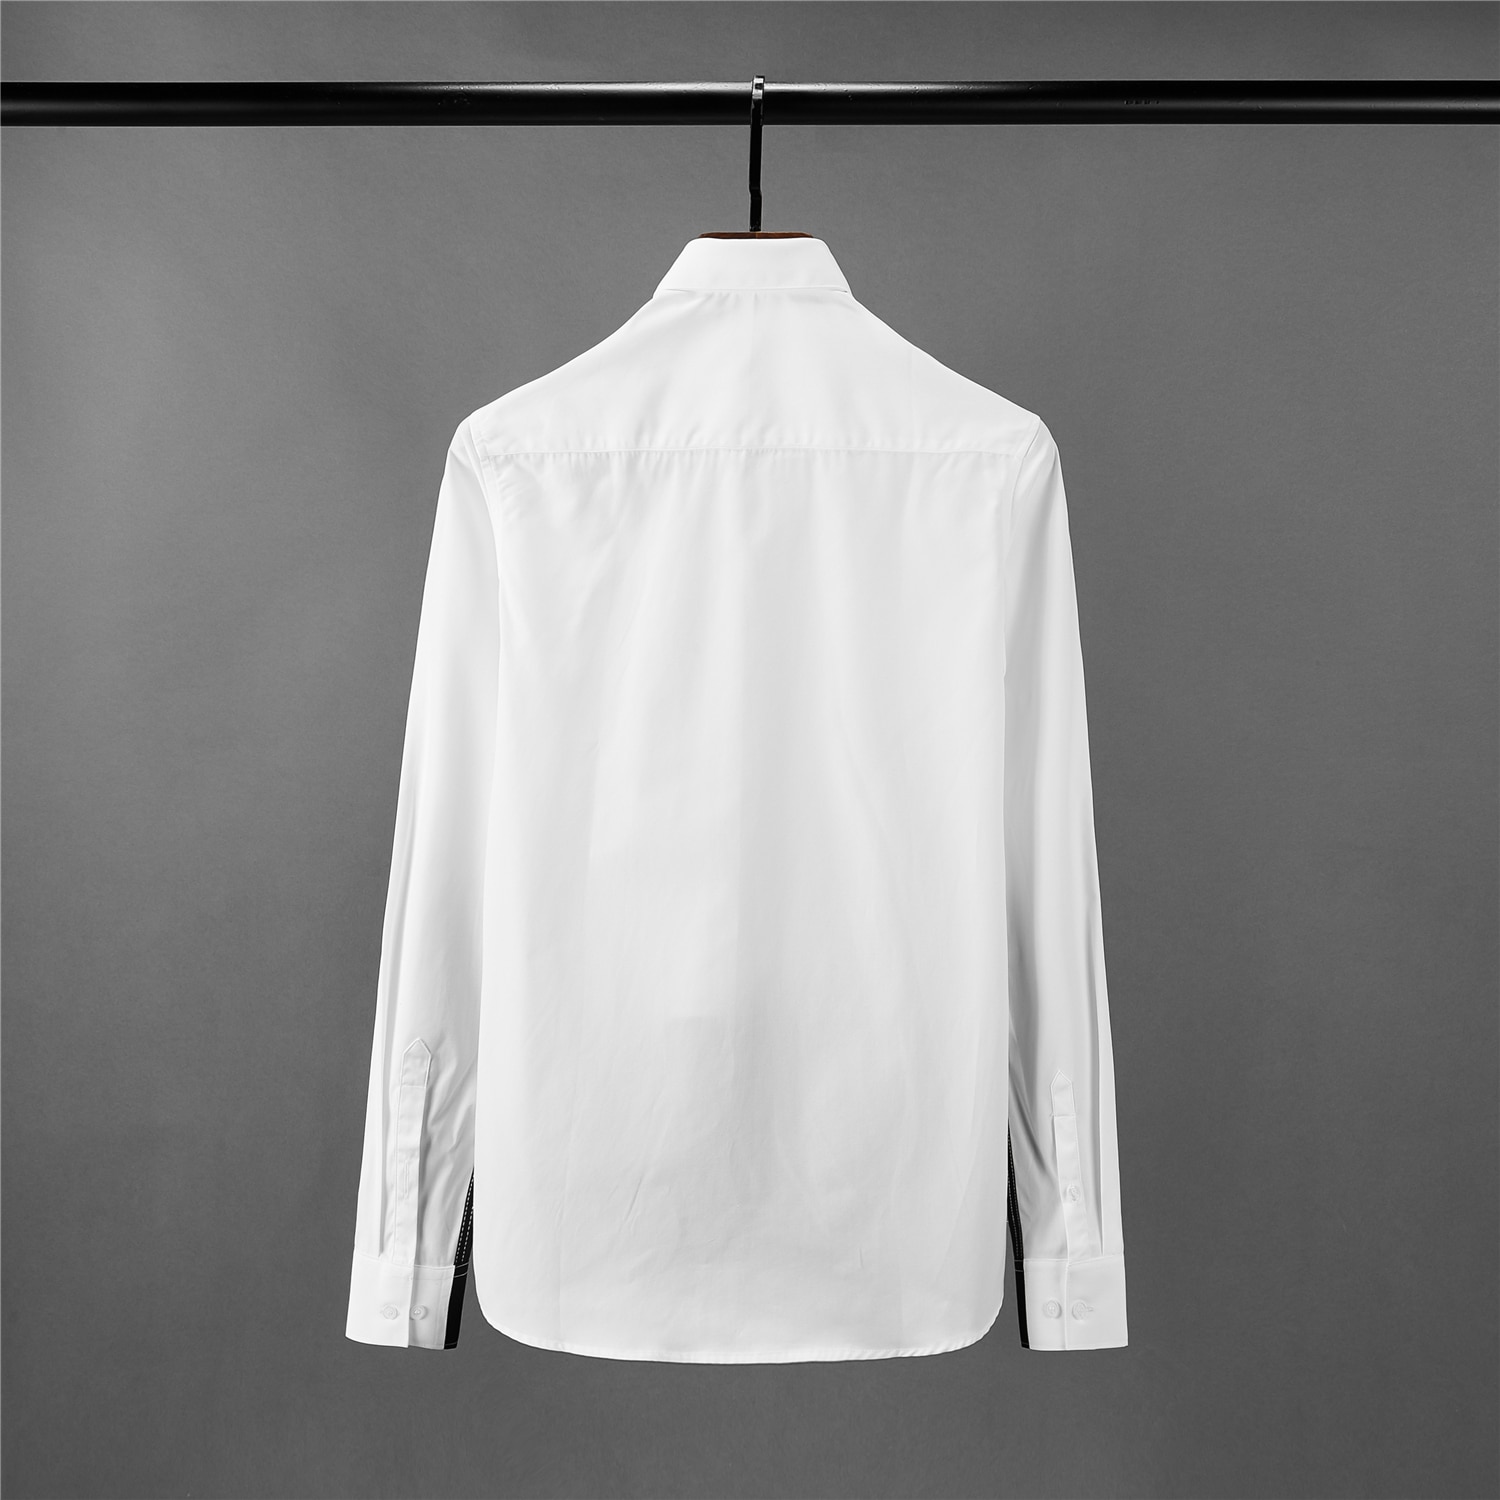 Minglu herre skjorte luksus sort hvid splejsning langærmet herre kjole skjorter slim fit skjorter mand plus størrelse 4xl herre skjorter